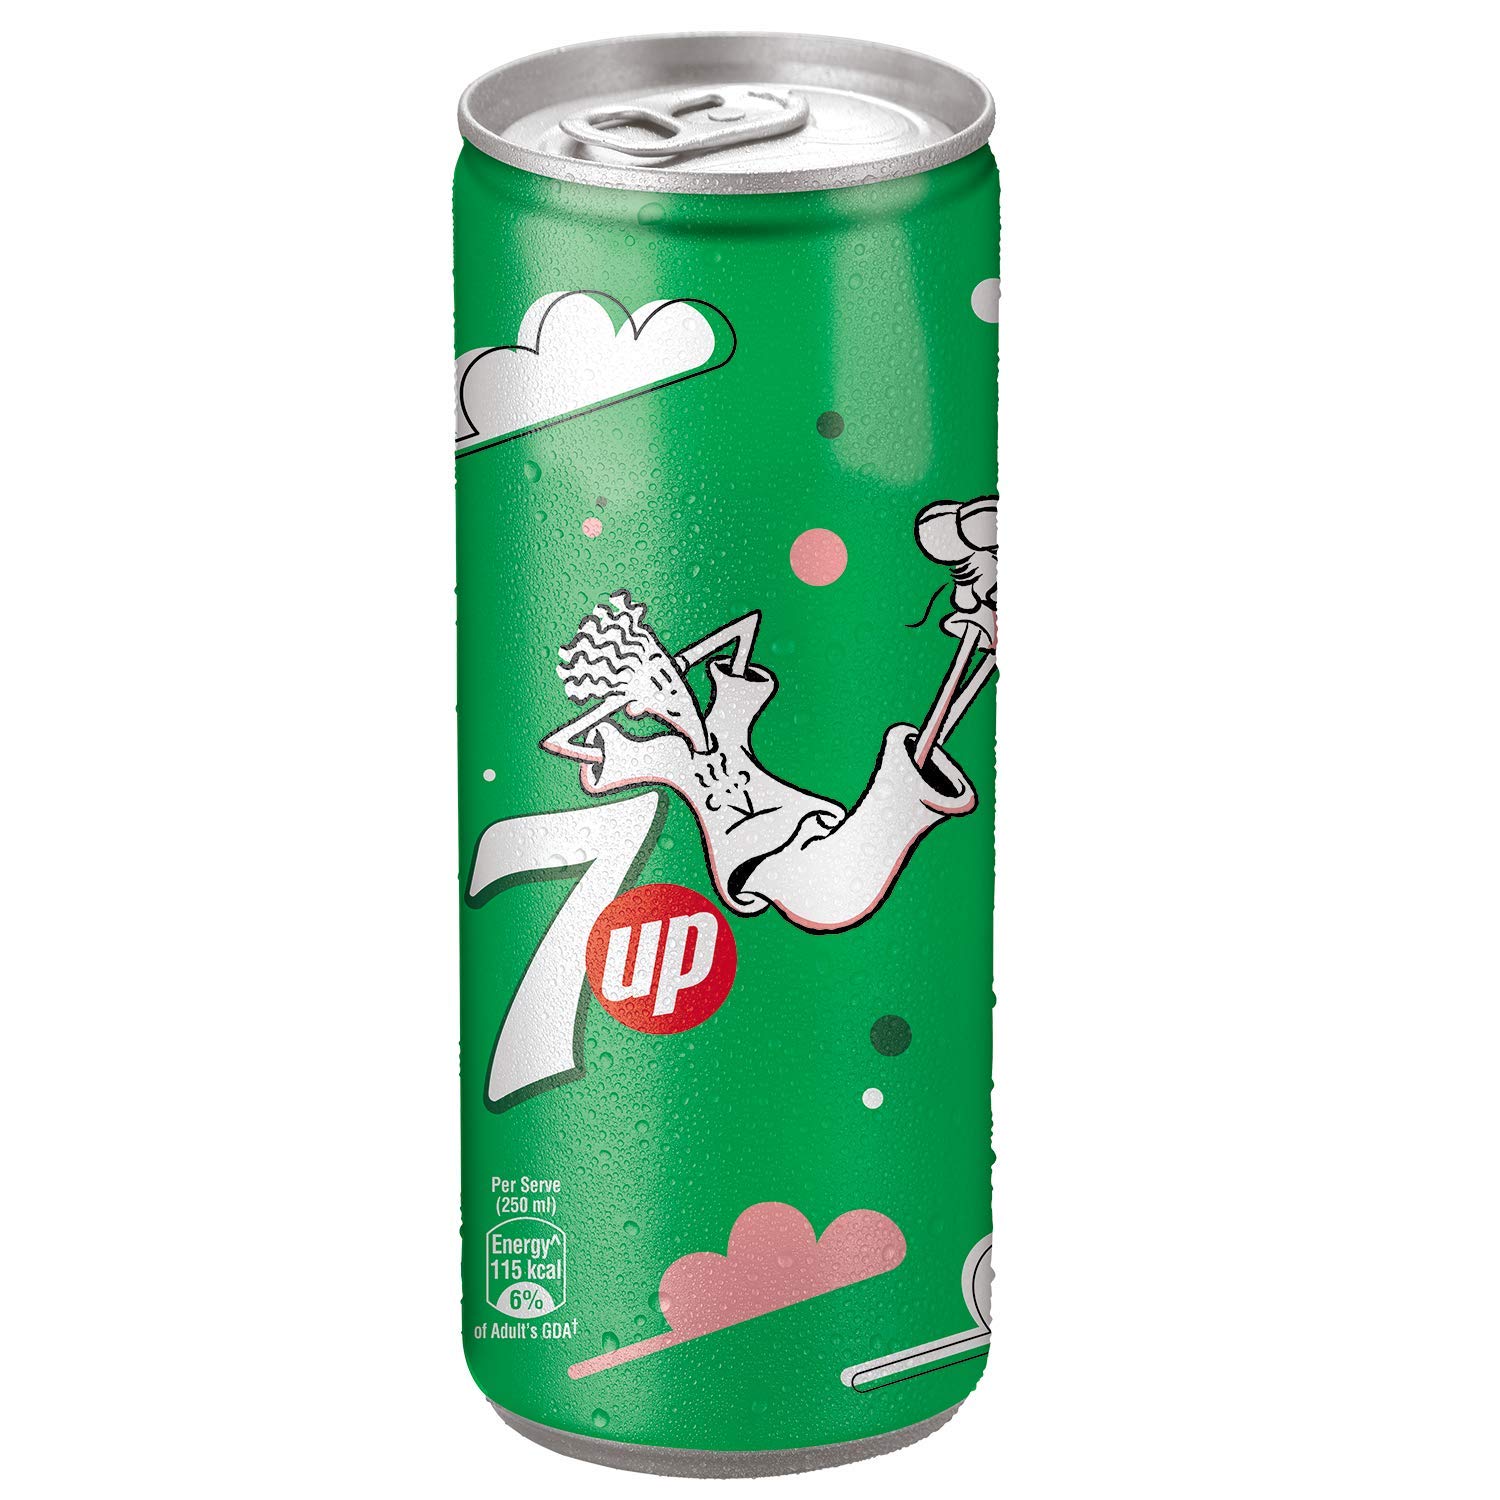 7 Up soft drink brands